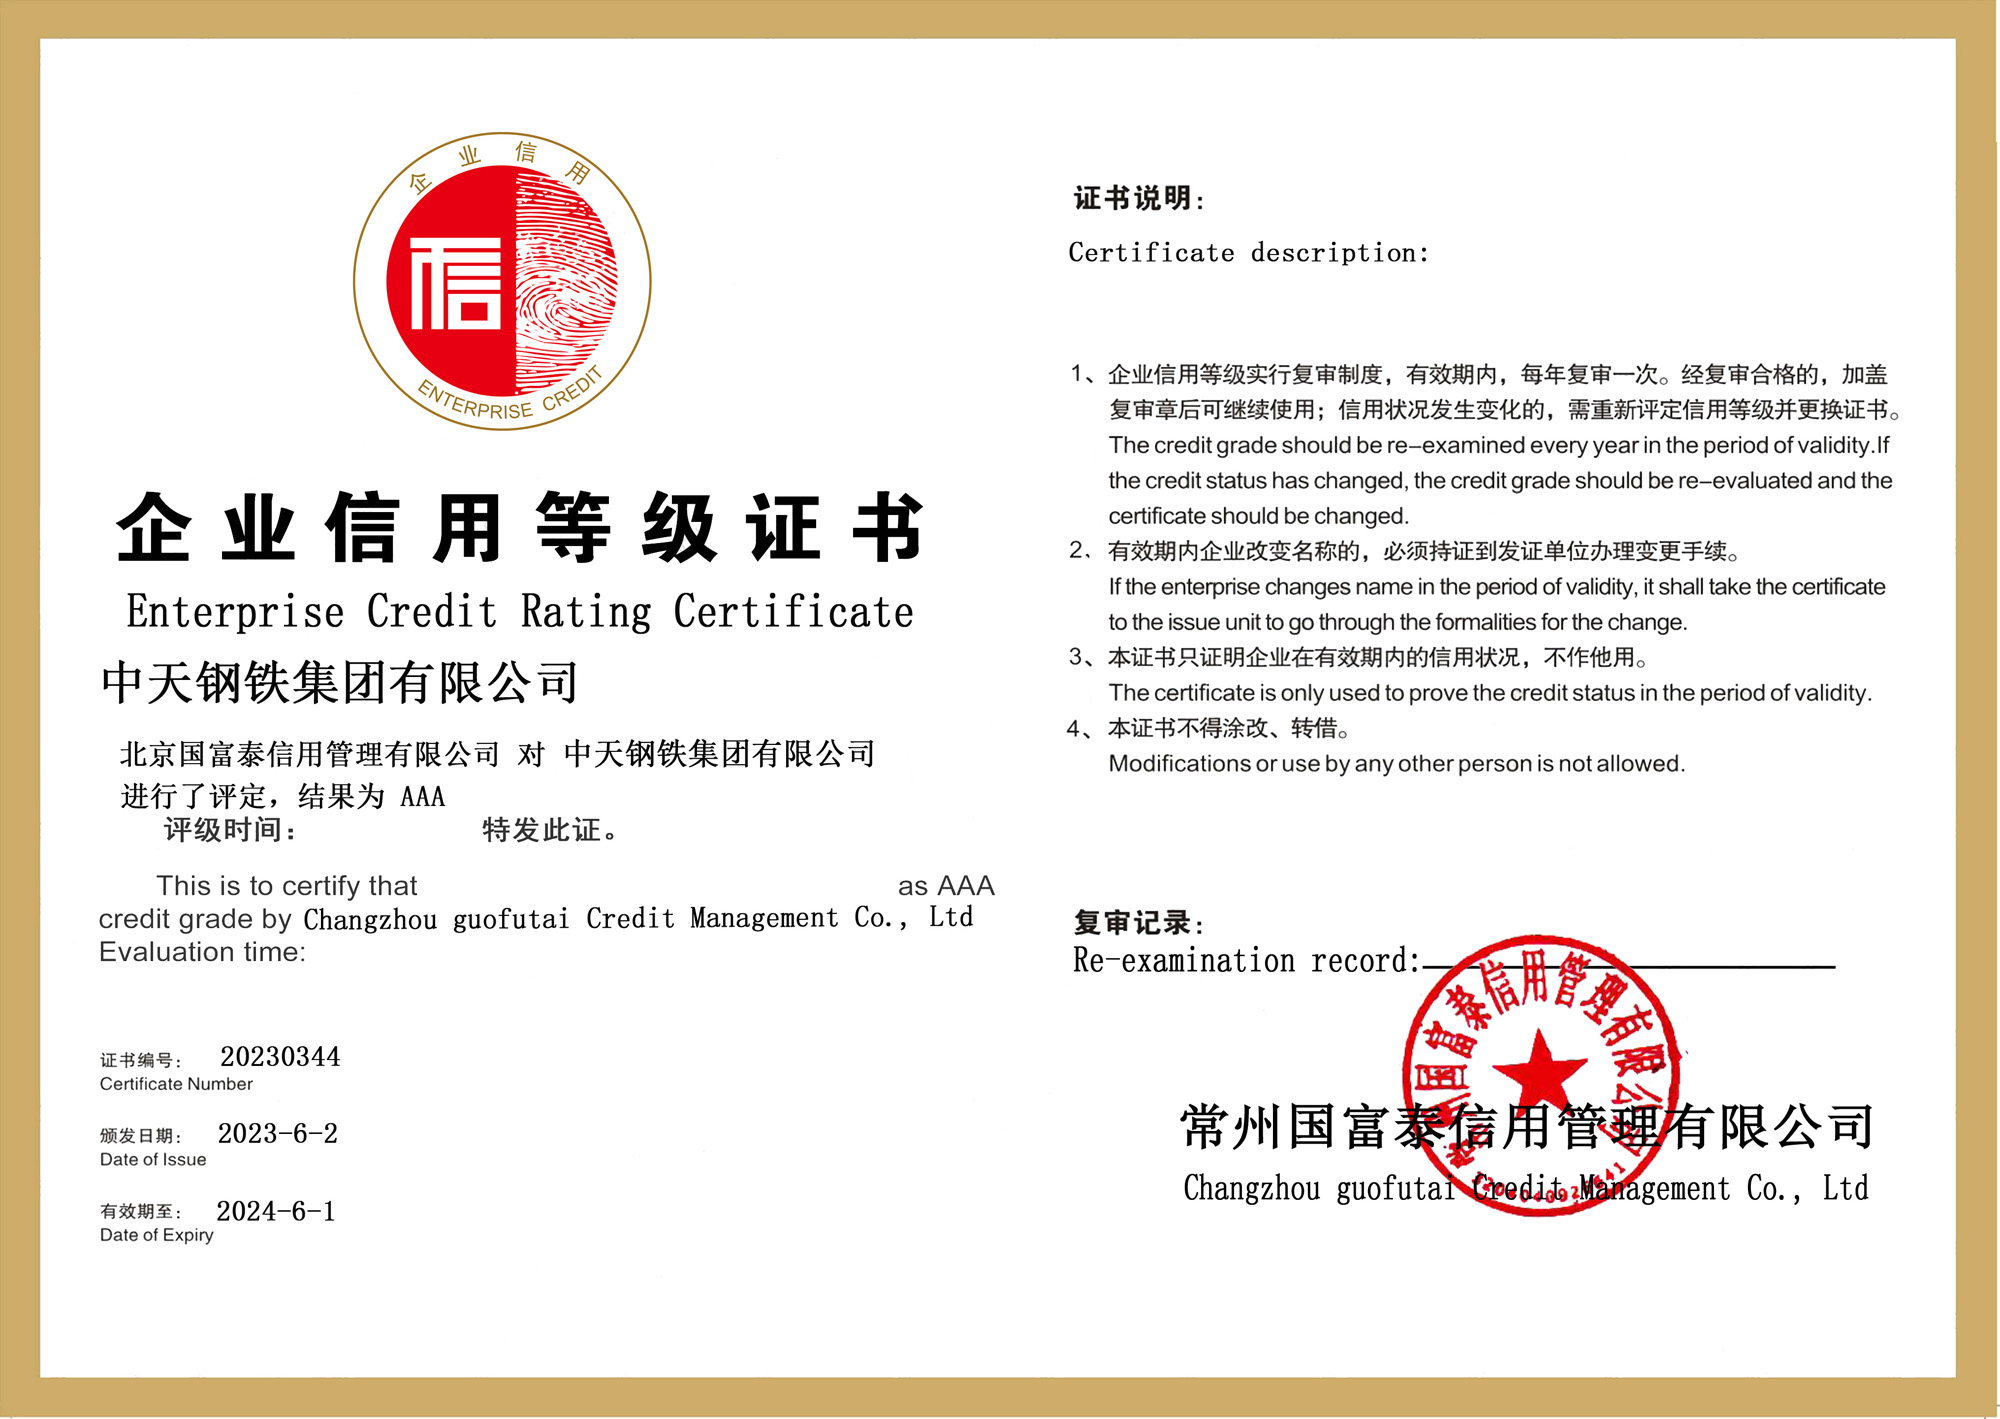 中天钢铁集团有限公司 信用评级证书 加电子公章副本.jpg